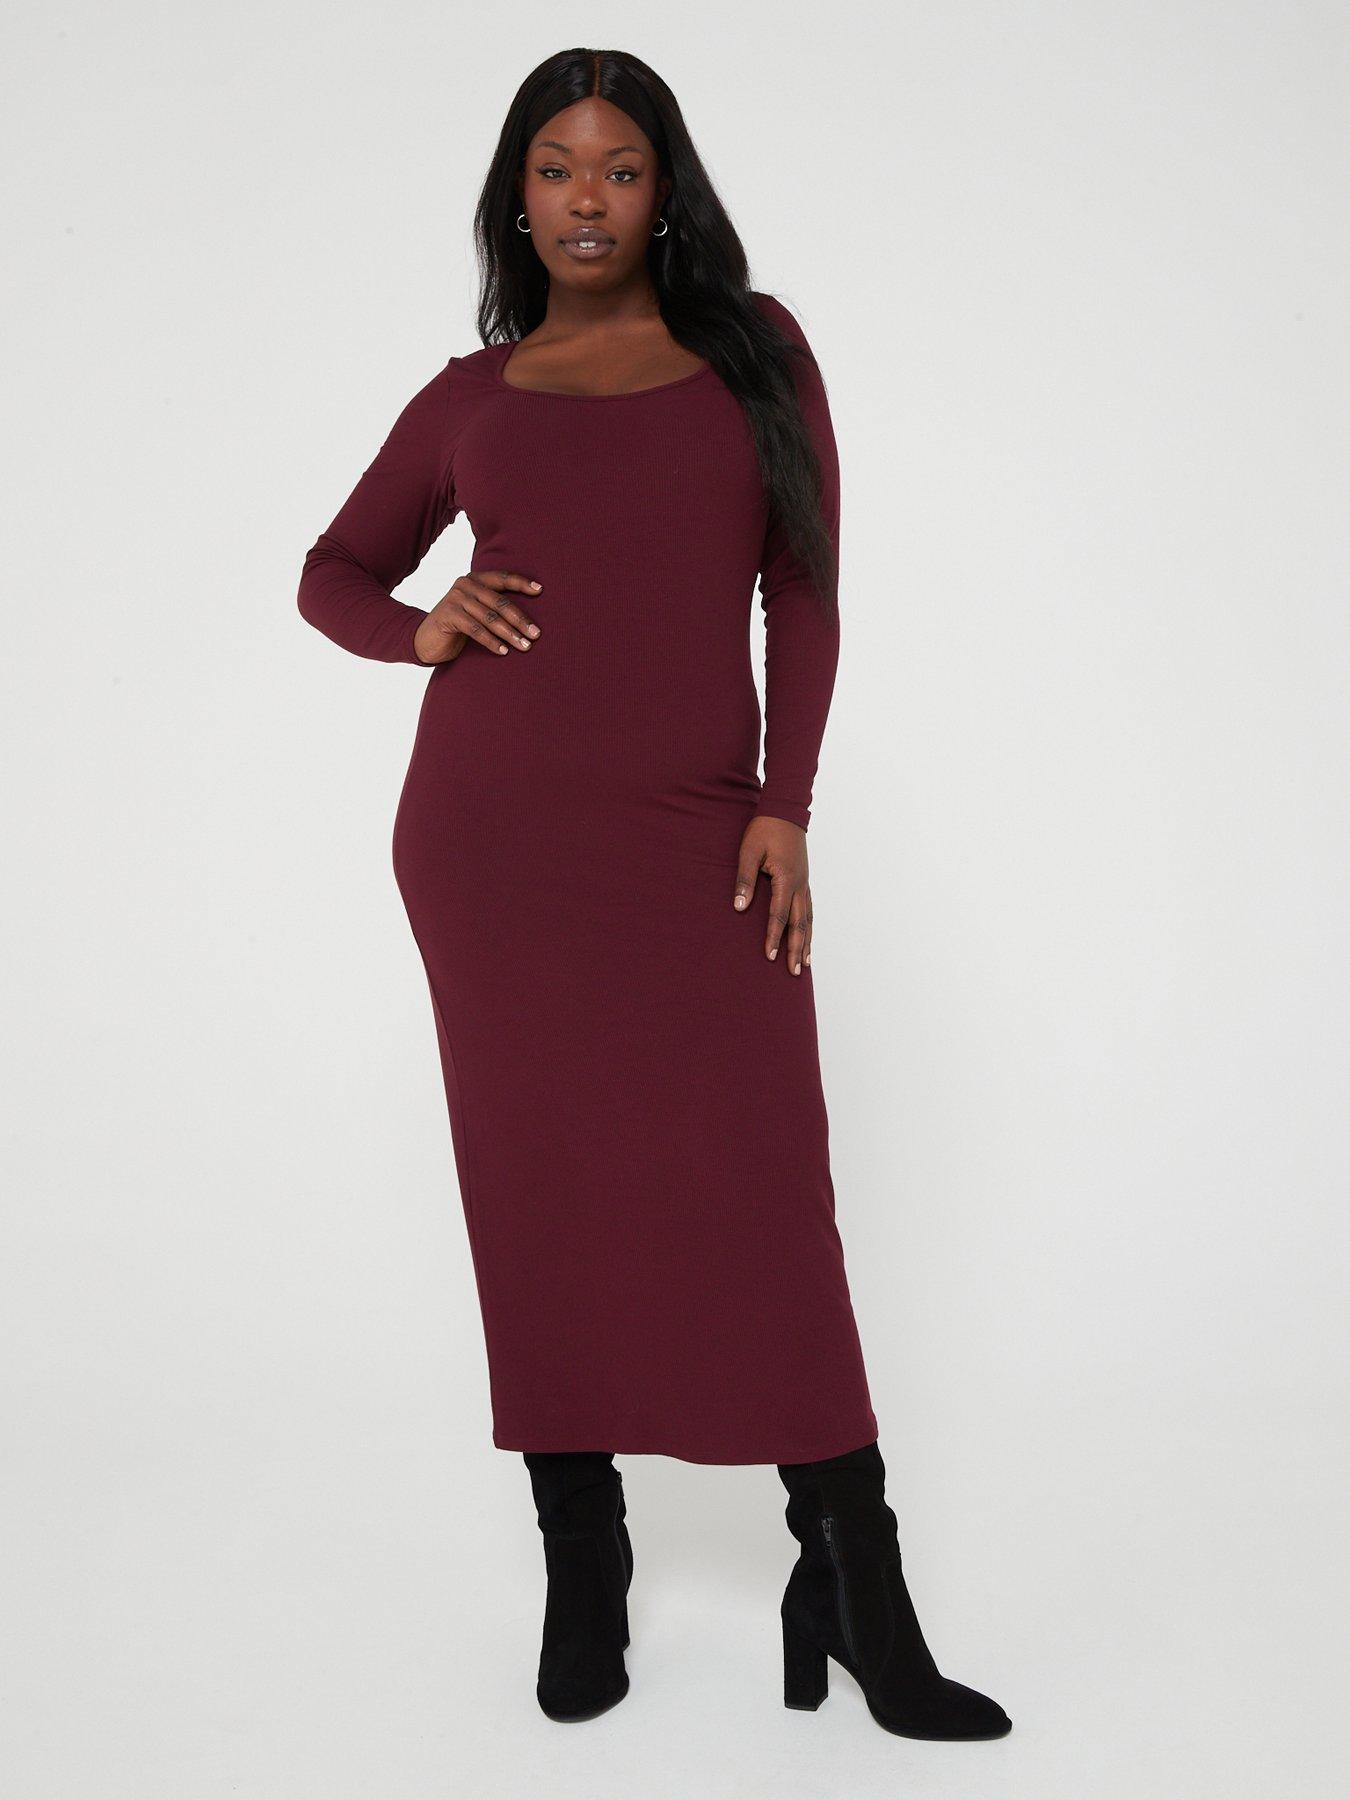 Plus Size Velvet Plunging V-Neck Front Slit 3/4 Sleeve Evening Dress